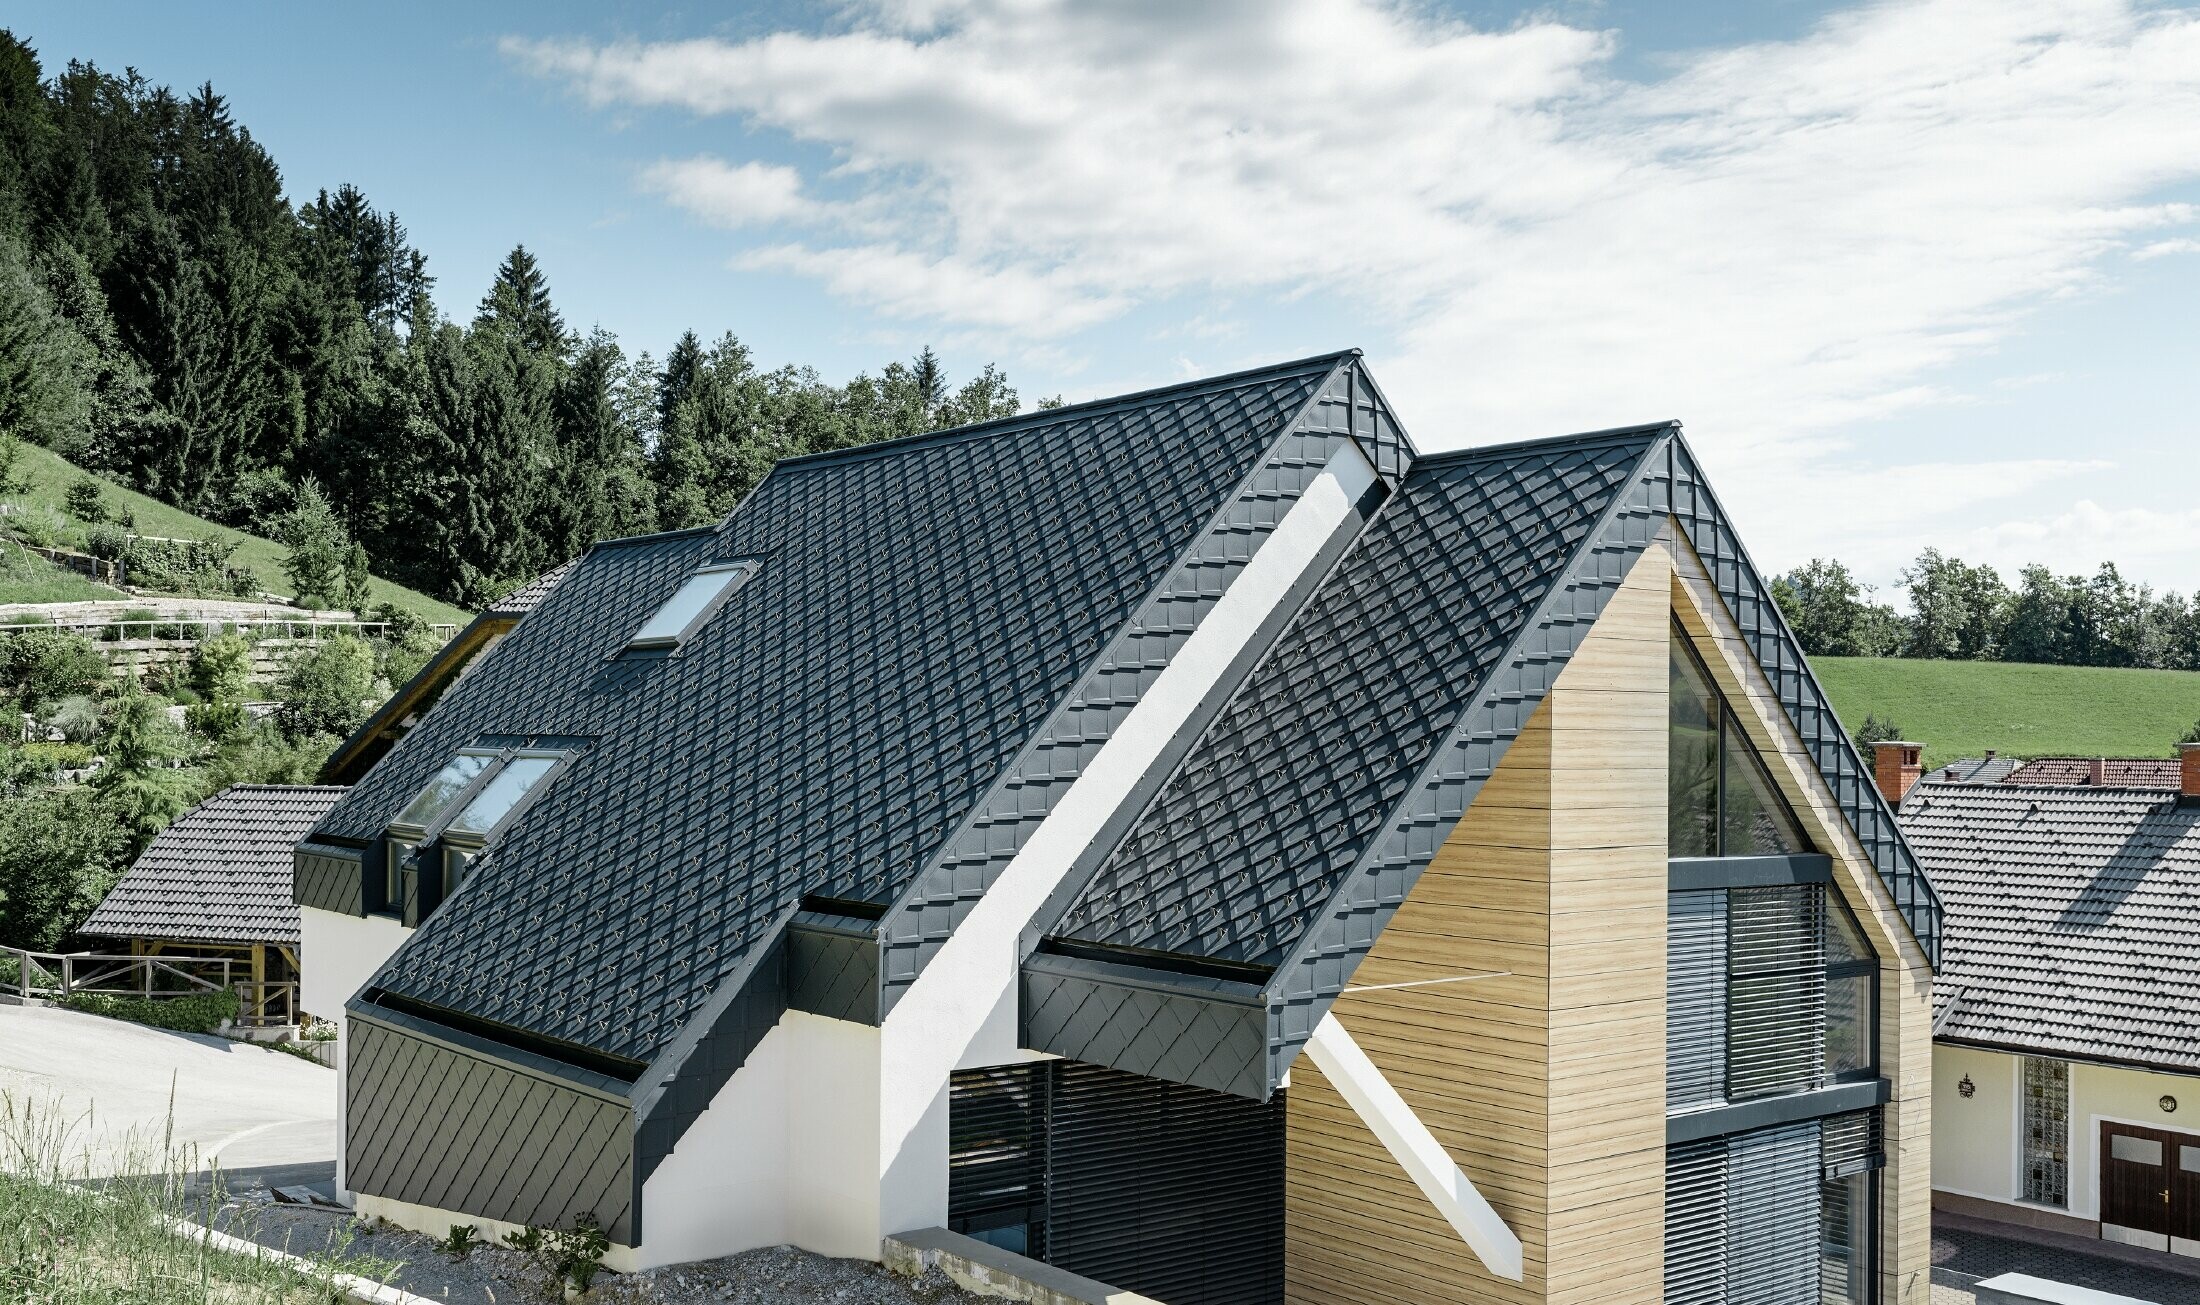 Eengezinswoning met zadeldak zonder uitstekend dak met een gevel in houtlook en een aluminium dak in antraciet